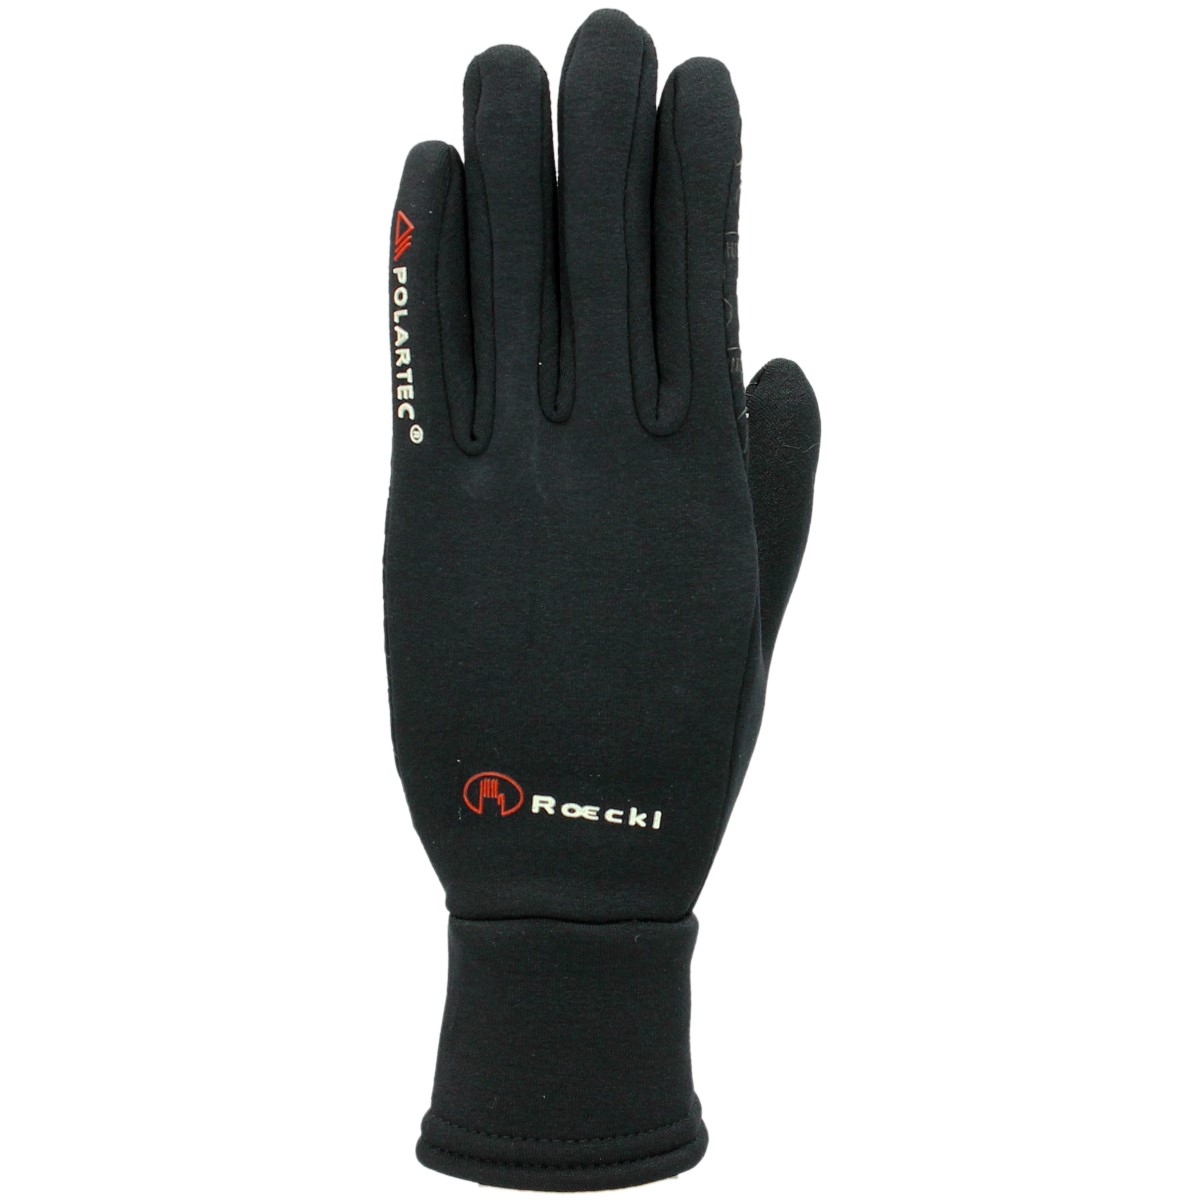 Handschoenen Roeckl Polartec, 6,5 in zwart